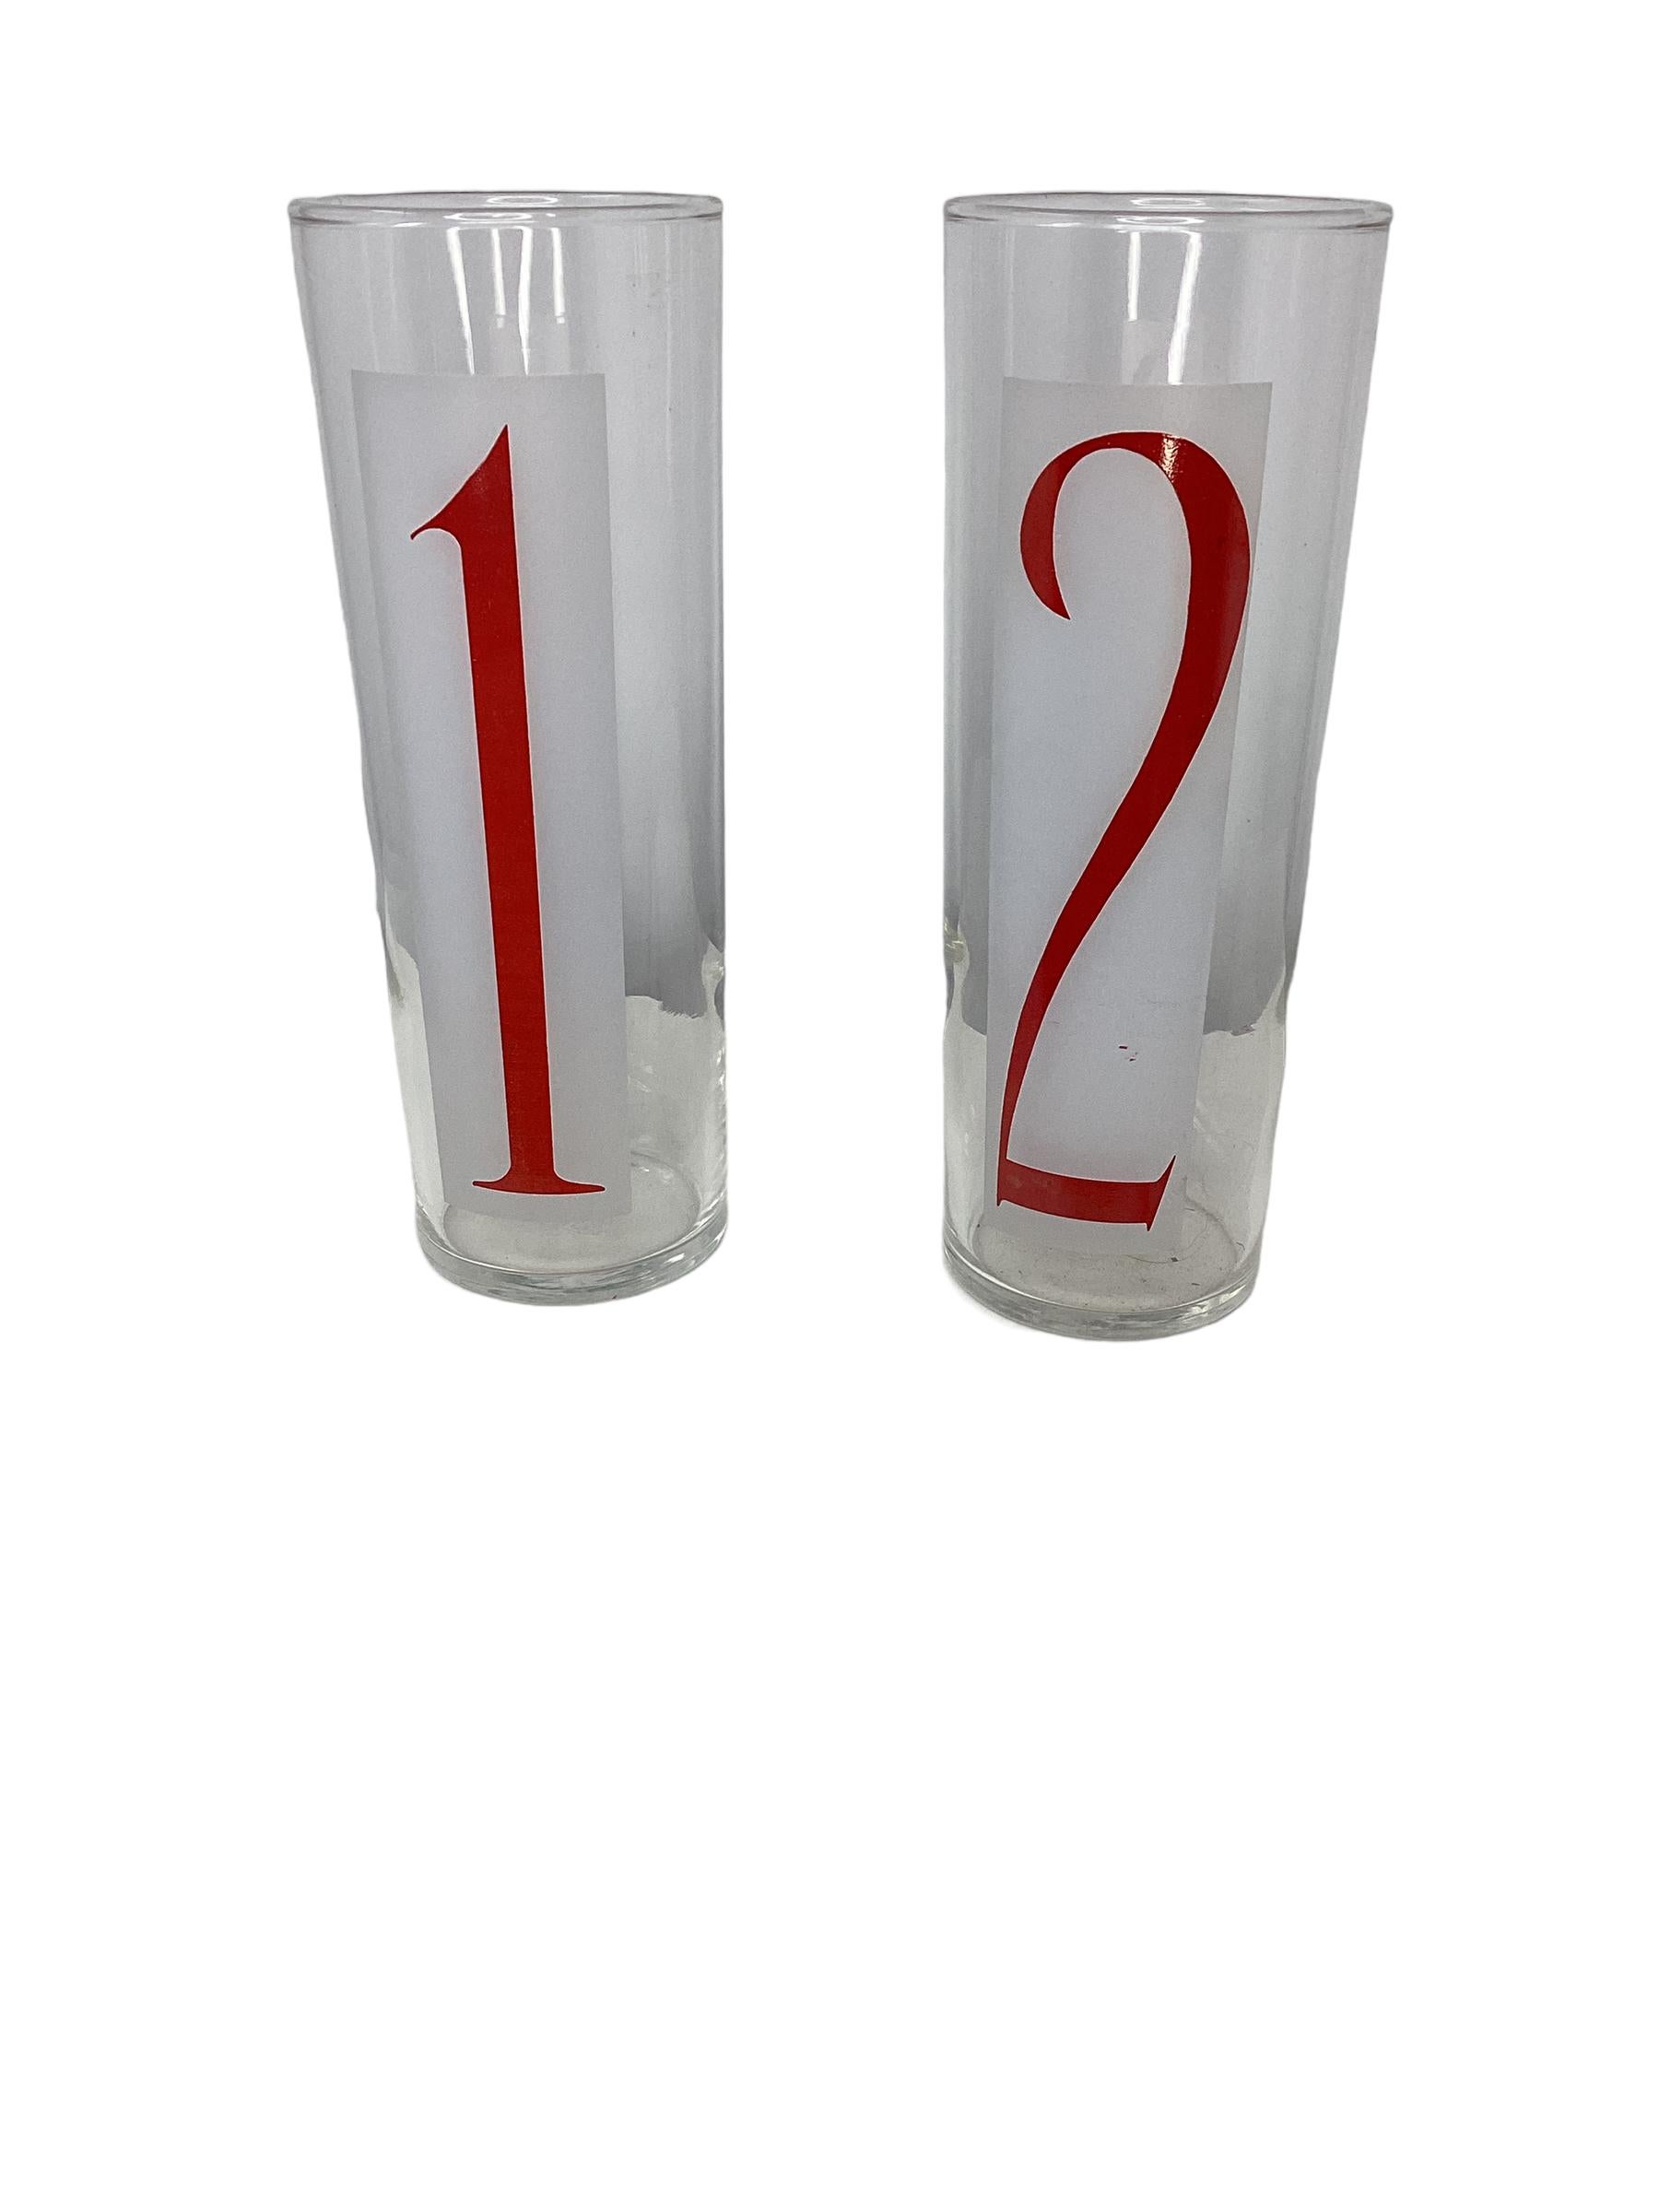 Satz von 8 Vintage Federal Glass Drinks By Numbers Coolers. Hohe, schlanke Gläser mit den Zahlen 1-8 in roten, fetten Zahlen auf einem matten Hintergrund. Perfekt für Sommercocktails.